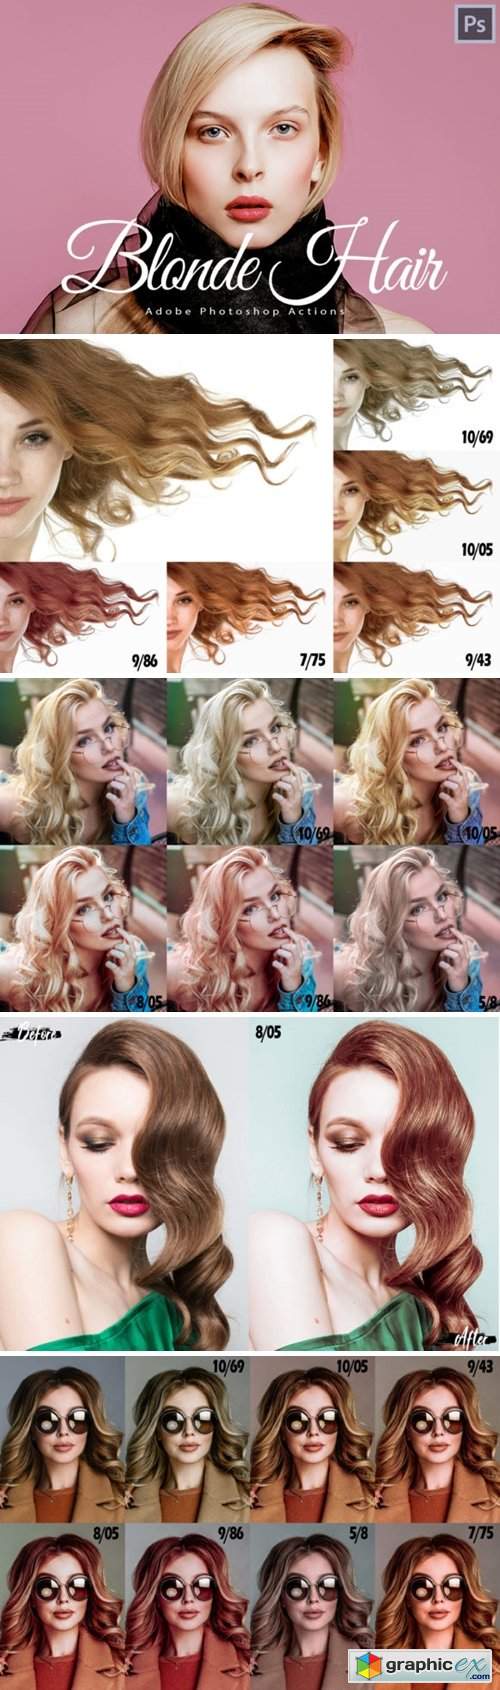 photoshop 5.1 brunette to blonde hair